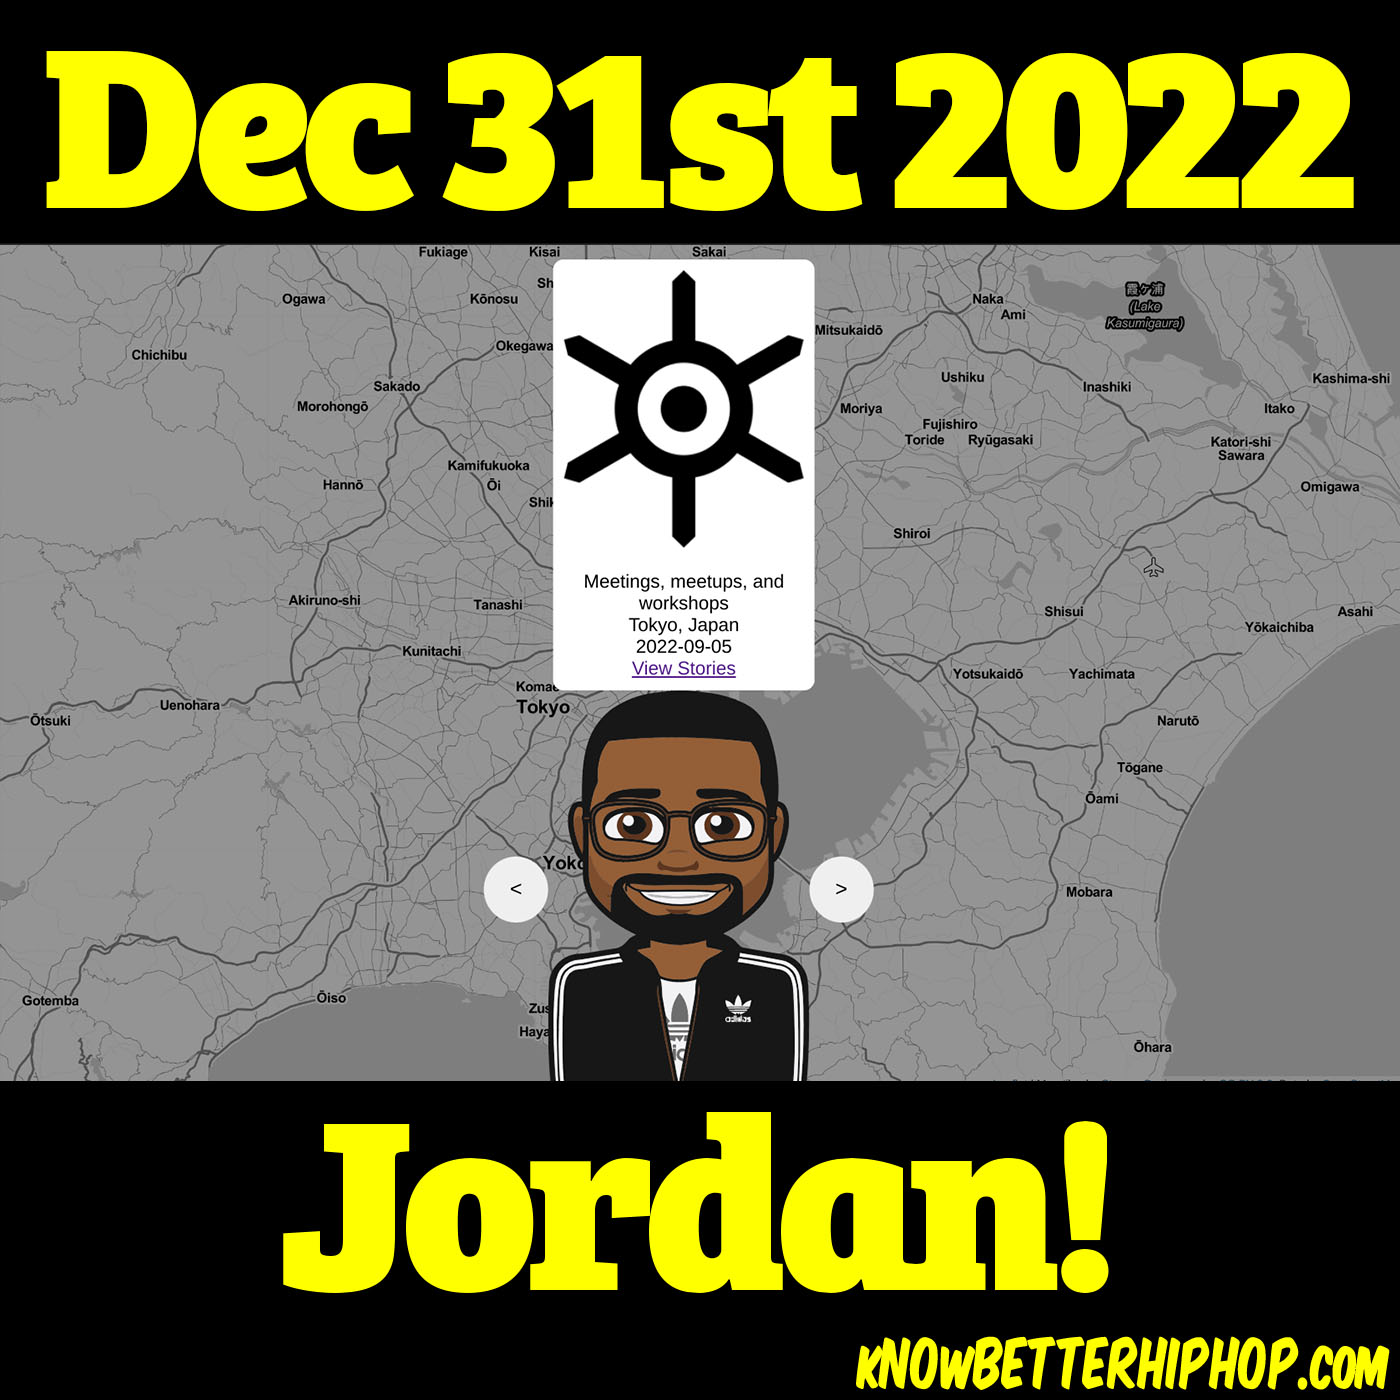 12-31-22 OUR show Jordan!